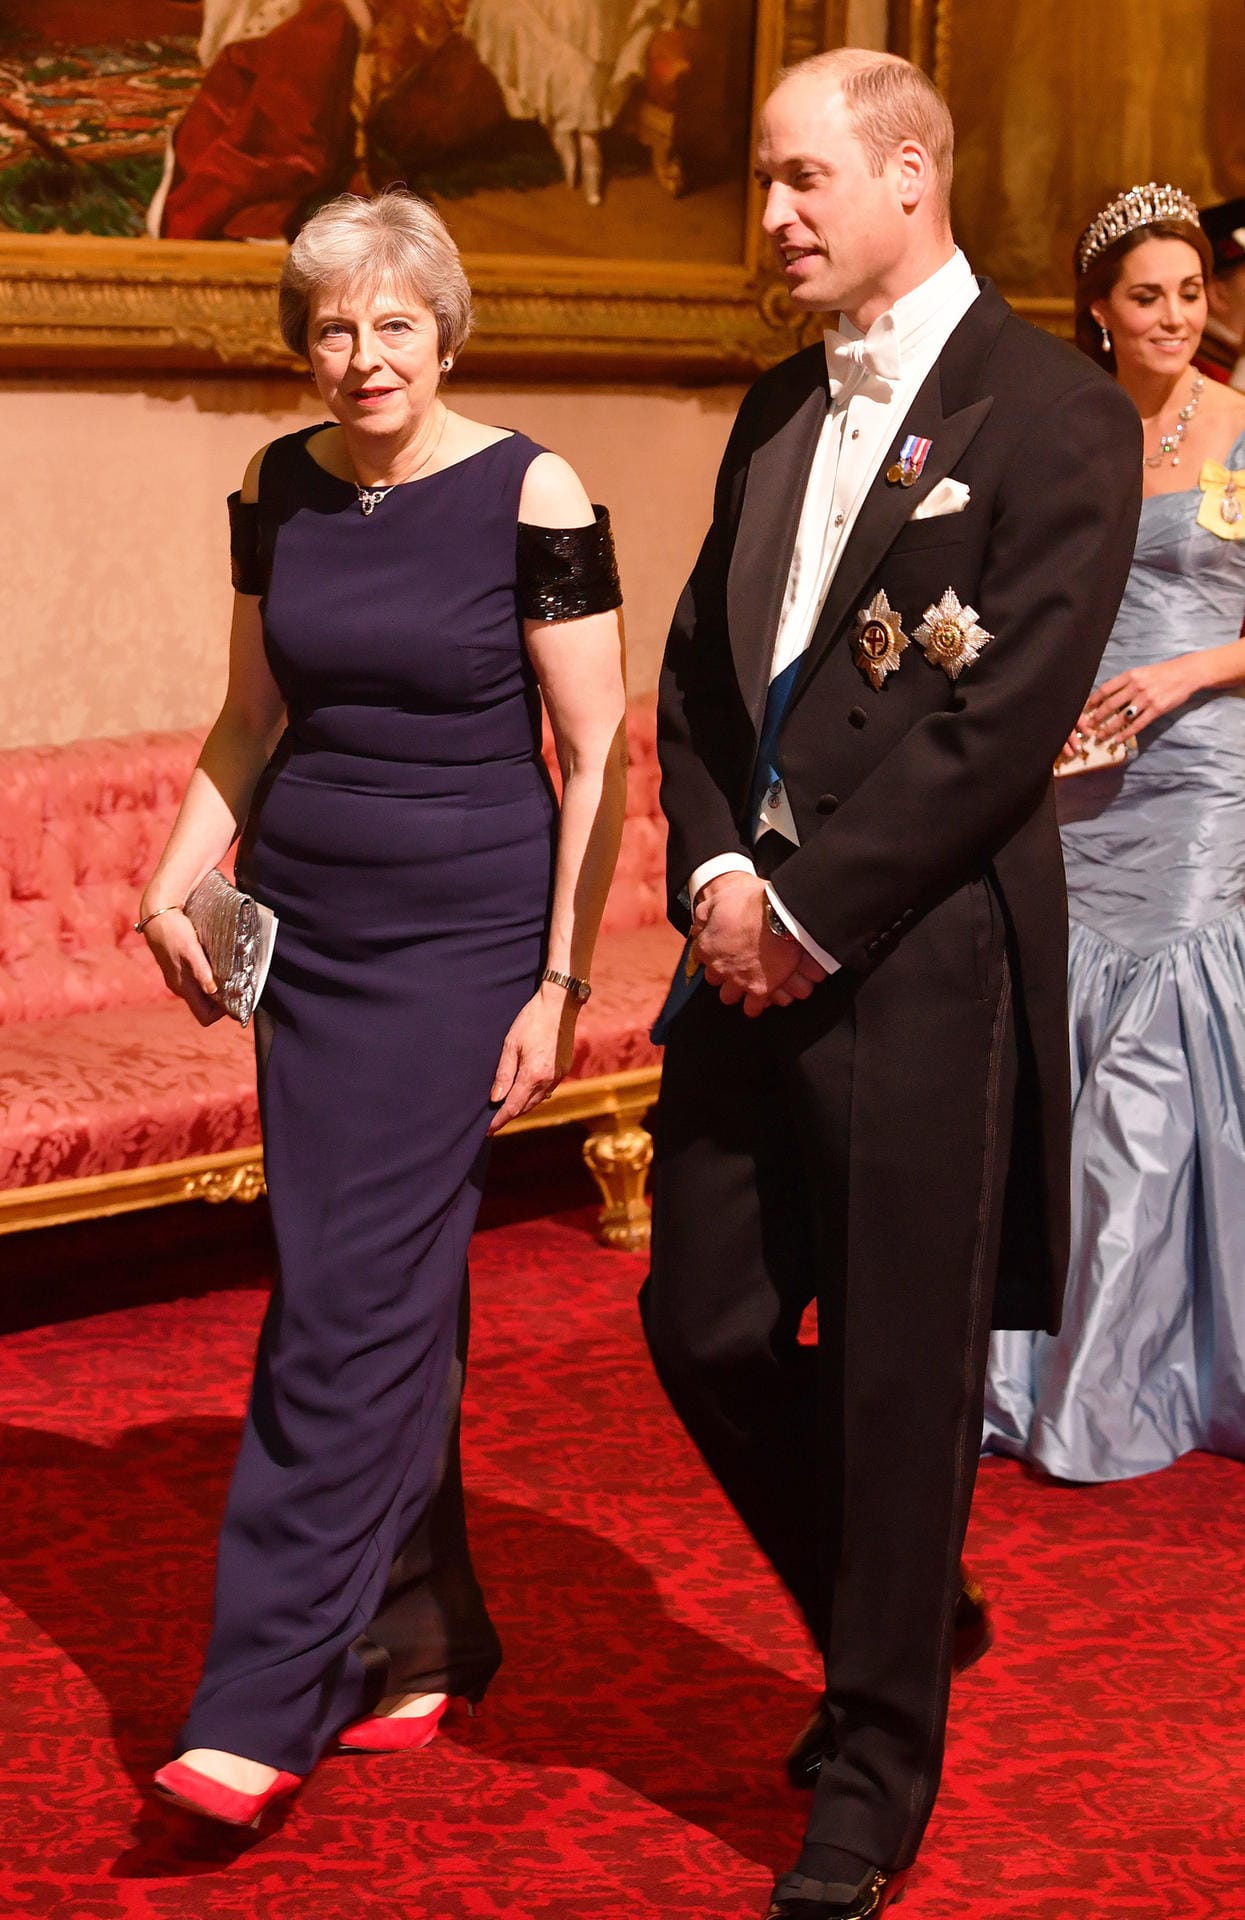 Prinz William: Der älteste Sohn von Prinz Charles kam in Begleitung von Großbritannien Premierministerin Theresa May.